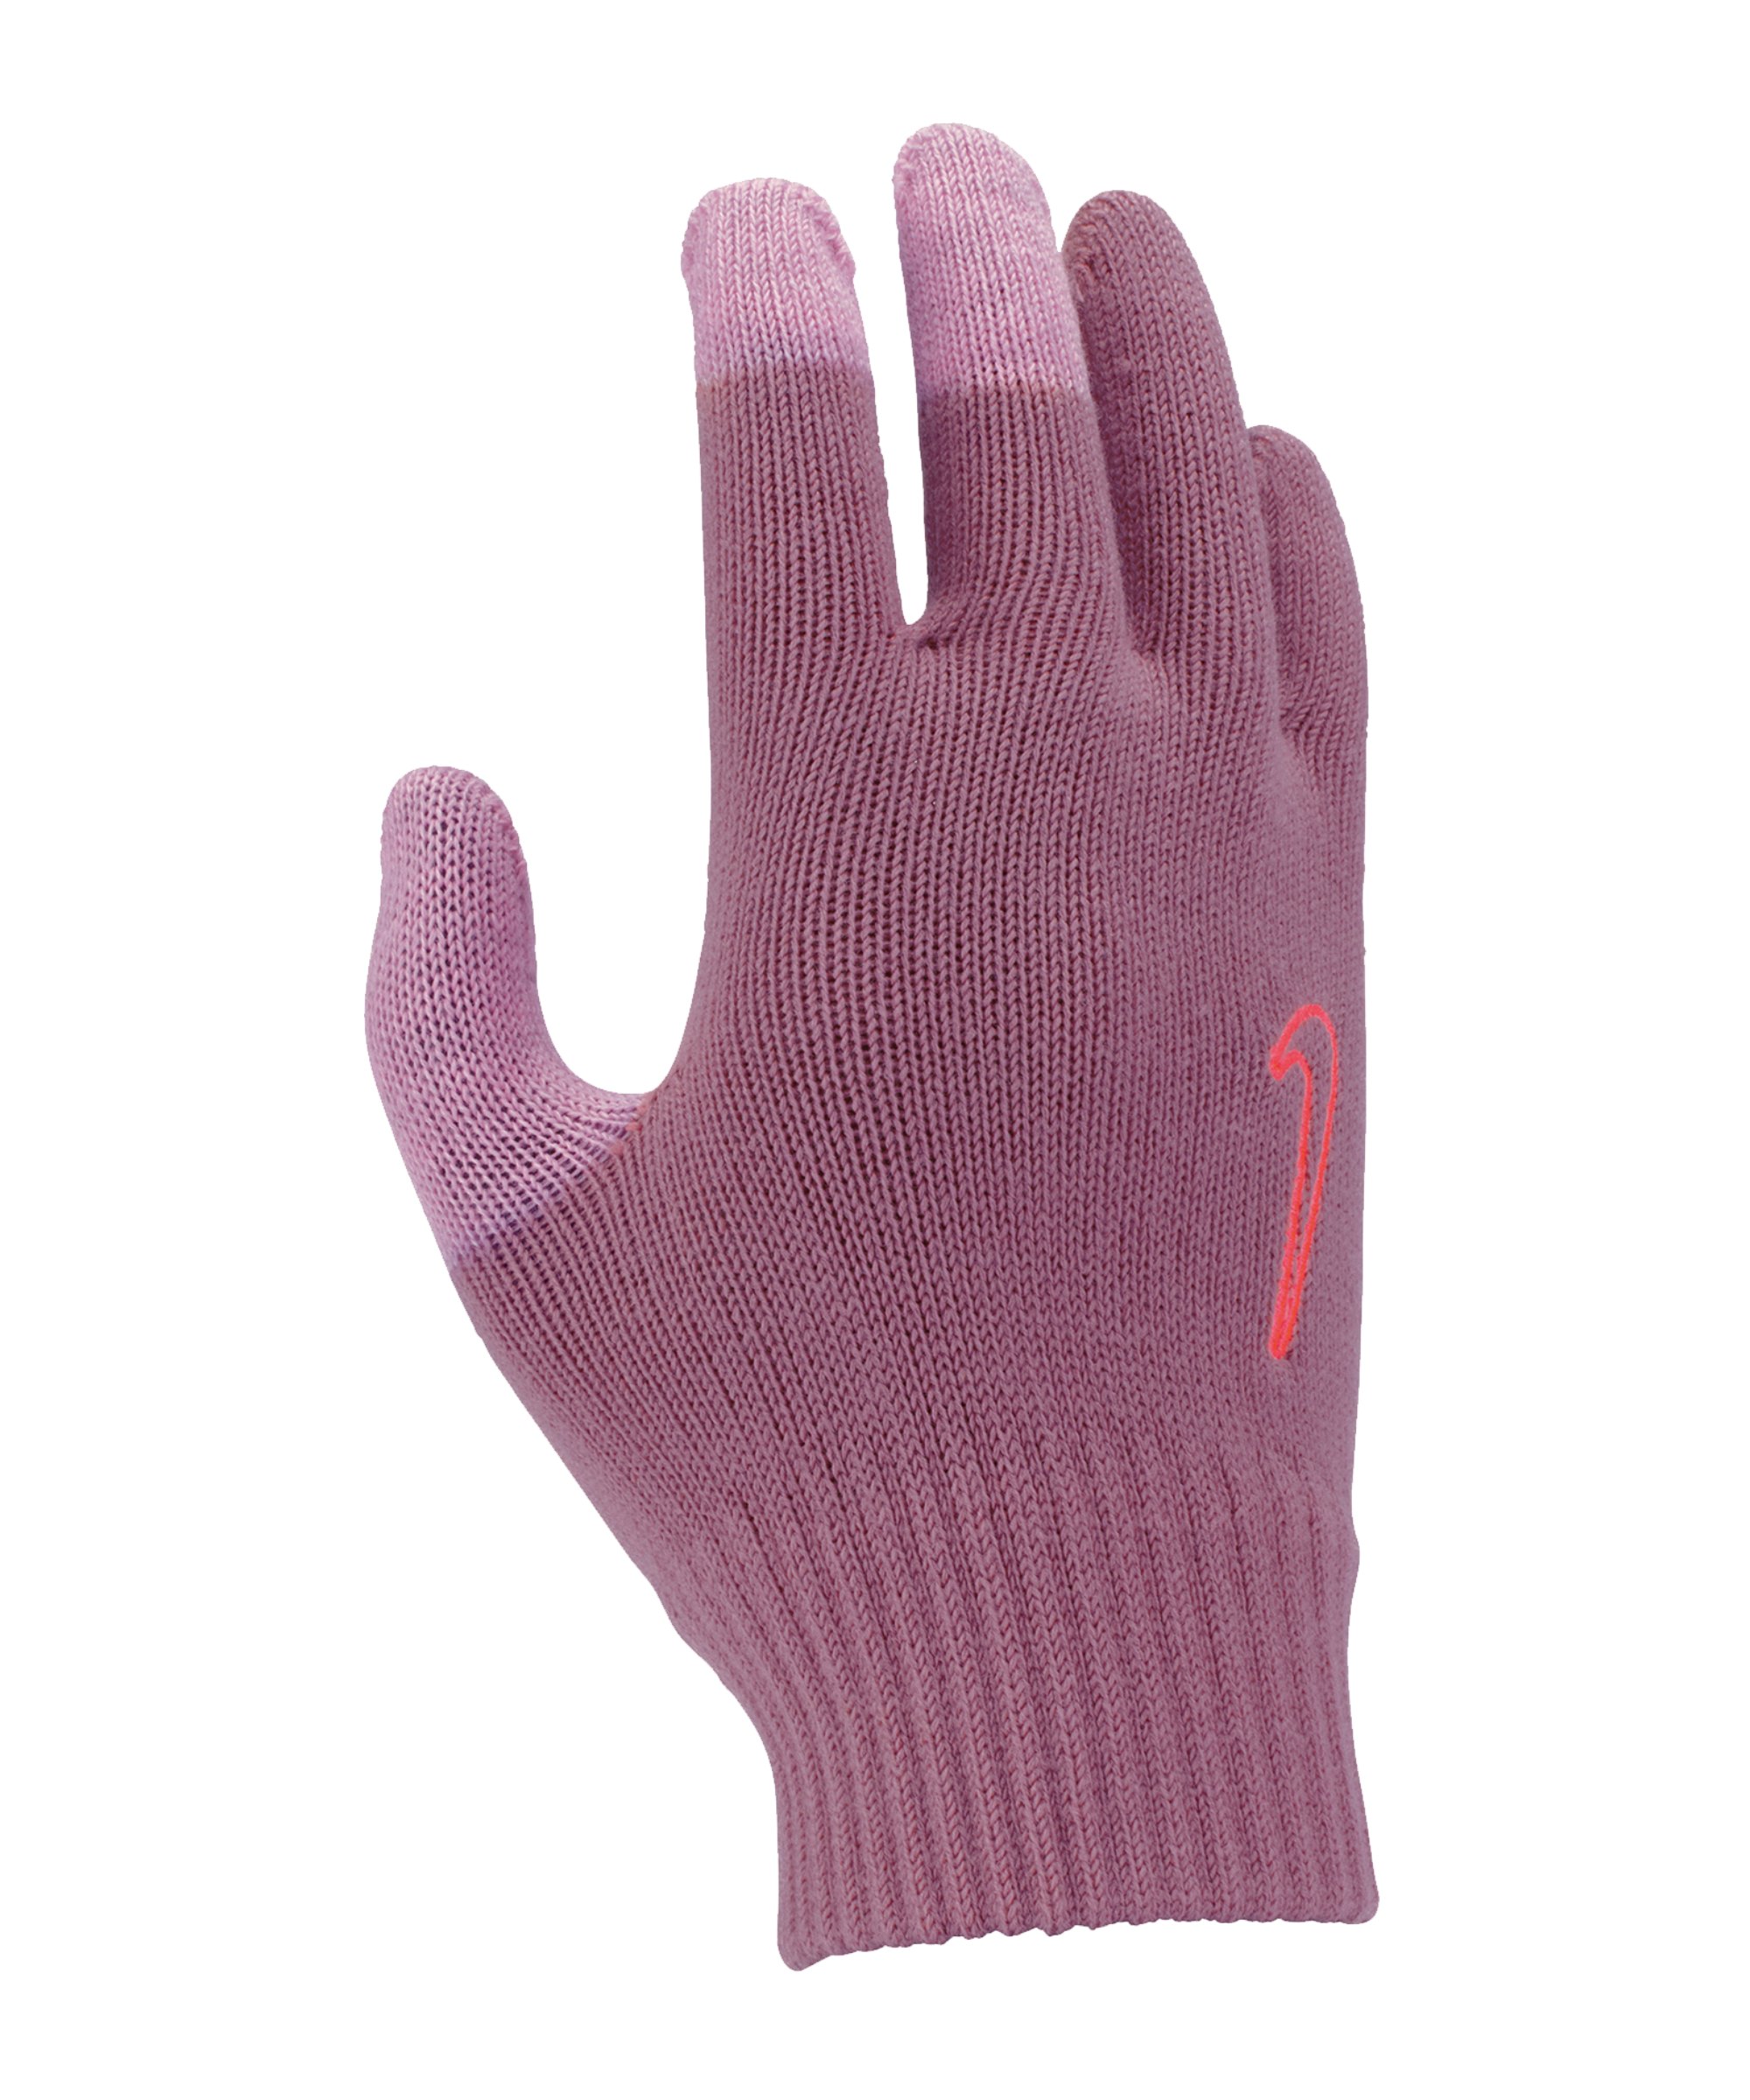 Nike Knitted Tech Grip Handschuhe 2.0 Kids F633 - pink